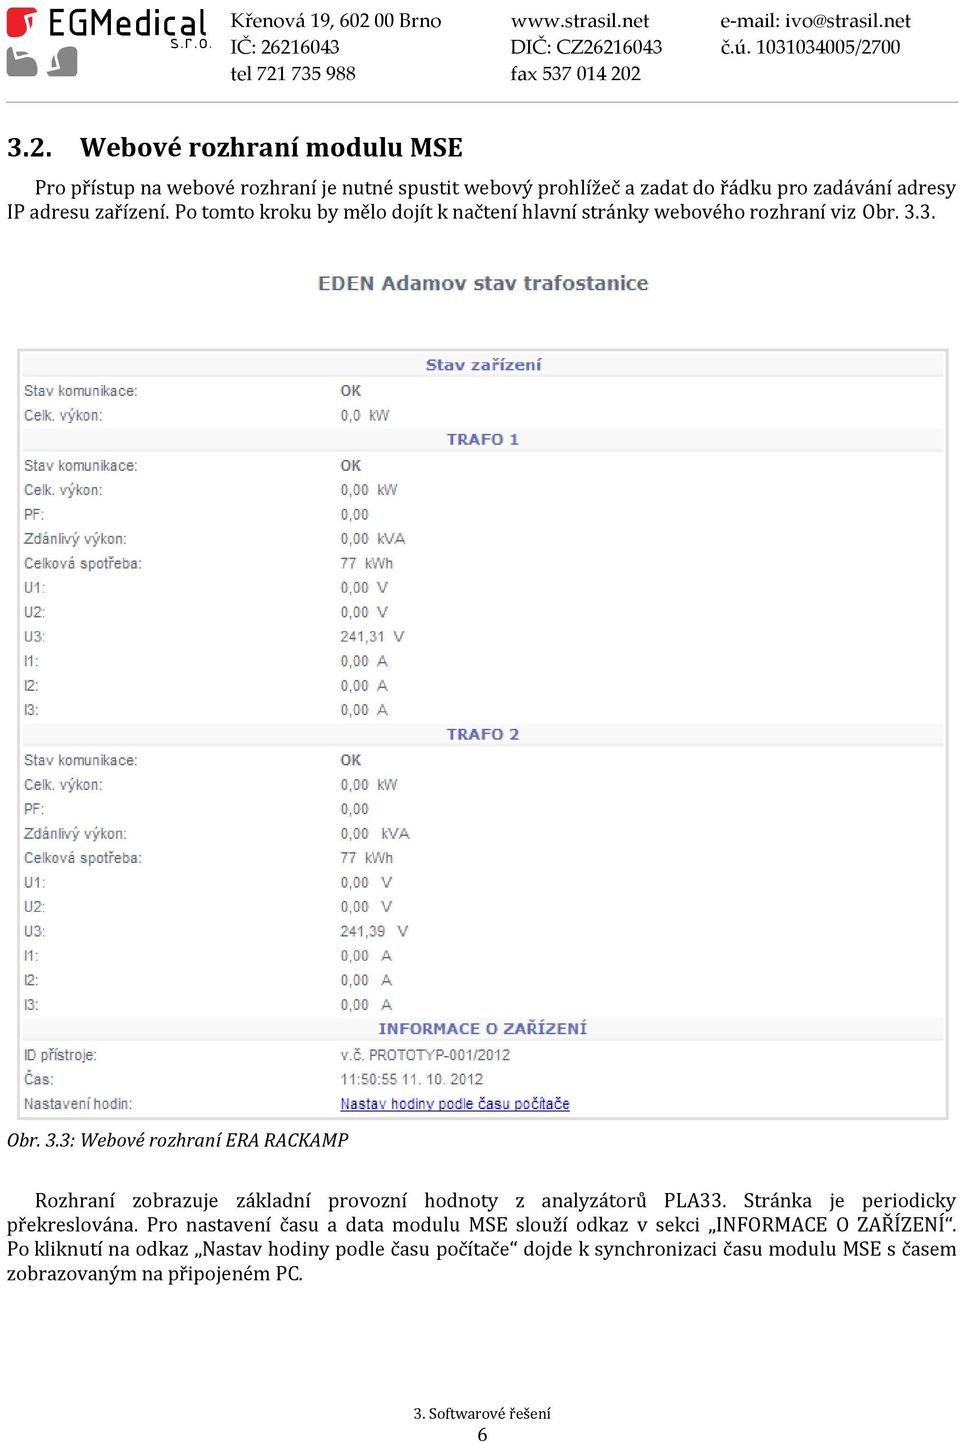 3. Obr. 3.3: Webové rozhraní ERA RACKAMP Rozhraní zobrazuje základní provozní hodnoty z analyzátorů PLA33. Stránka je periodicky překreslována.